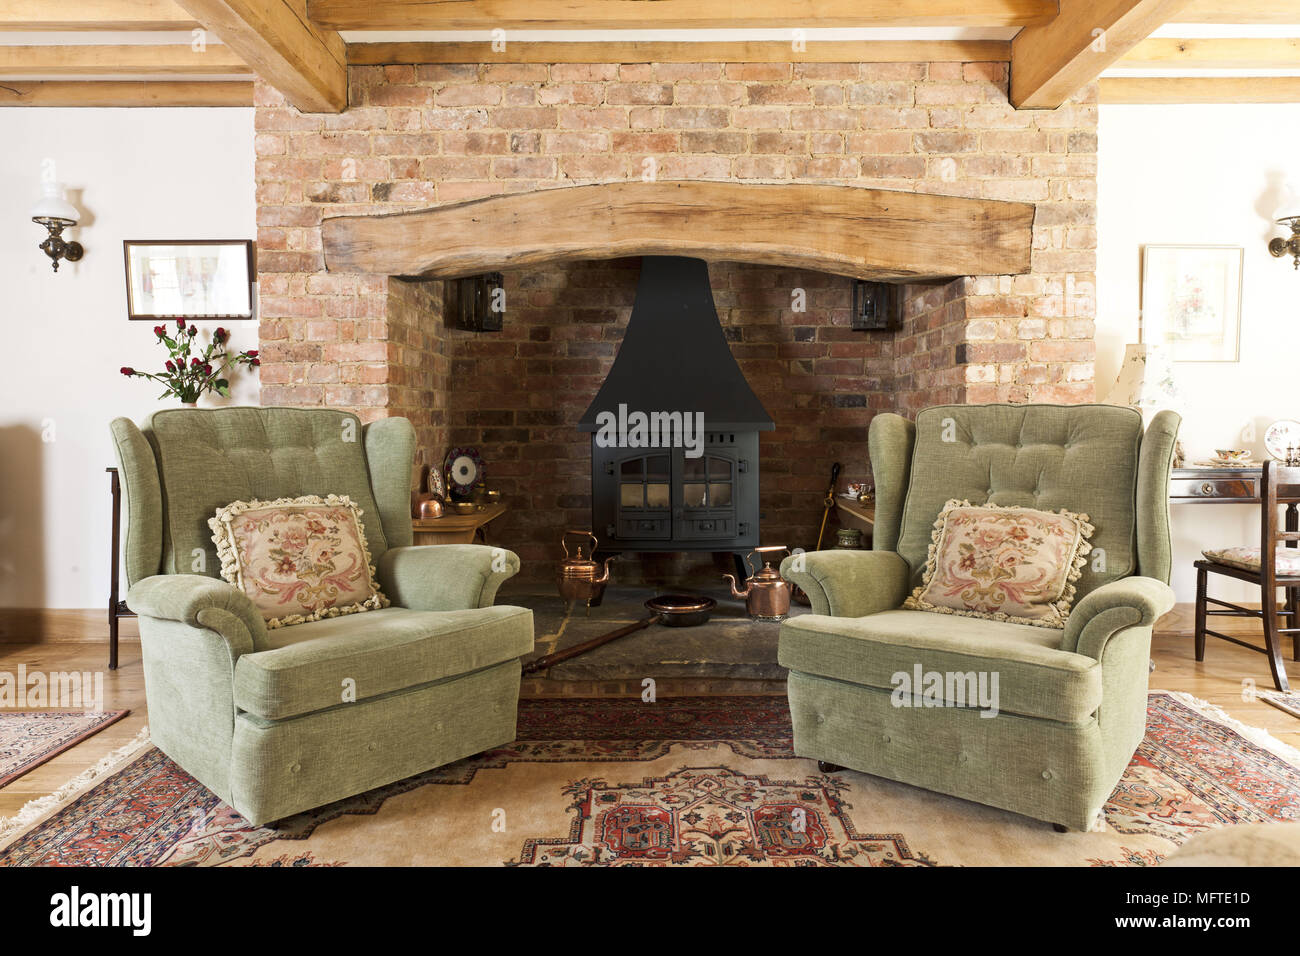 Zwei gepolsterte Sessel vor dem Kamin im Landhausstil Stockfotografie -  Alamy